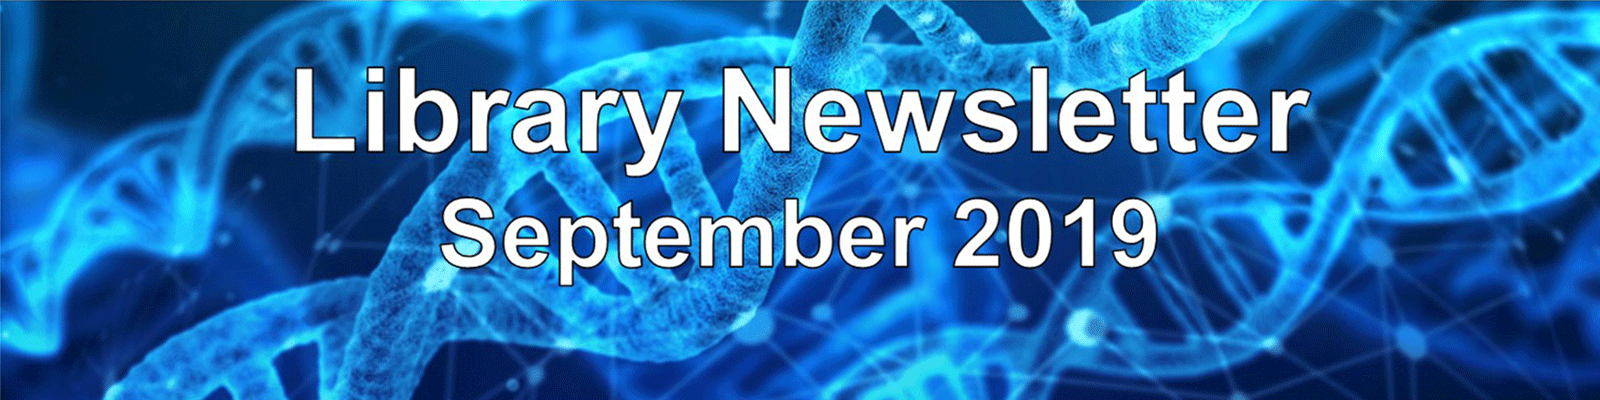 Library Newsletter September 2019